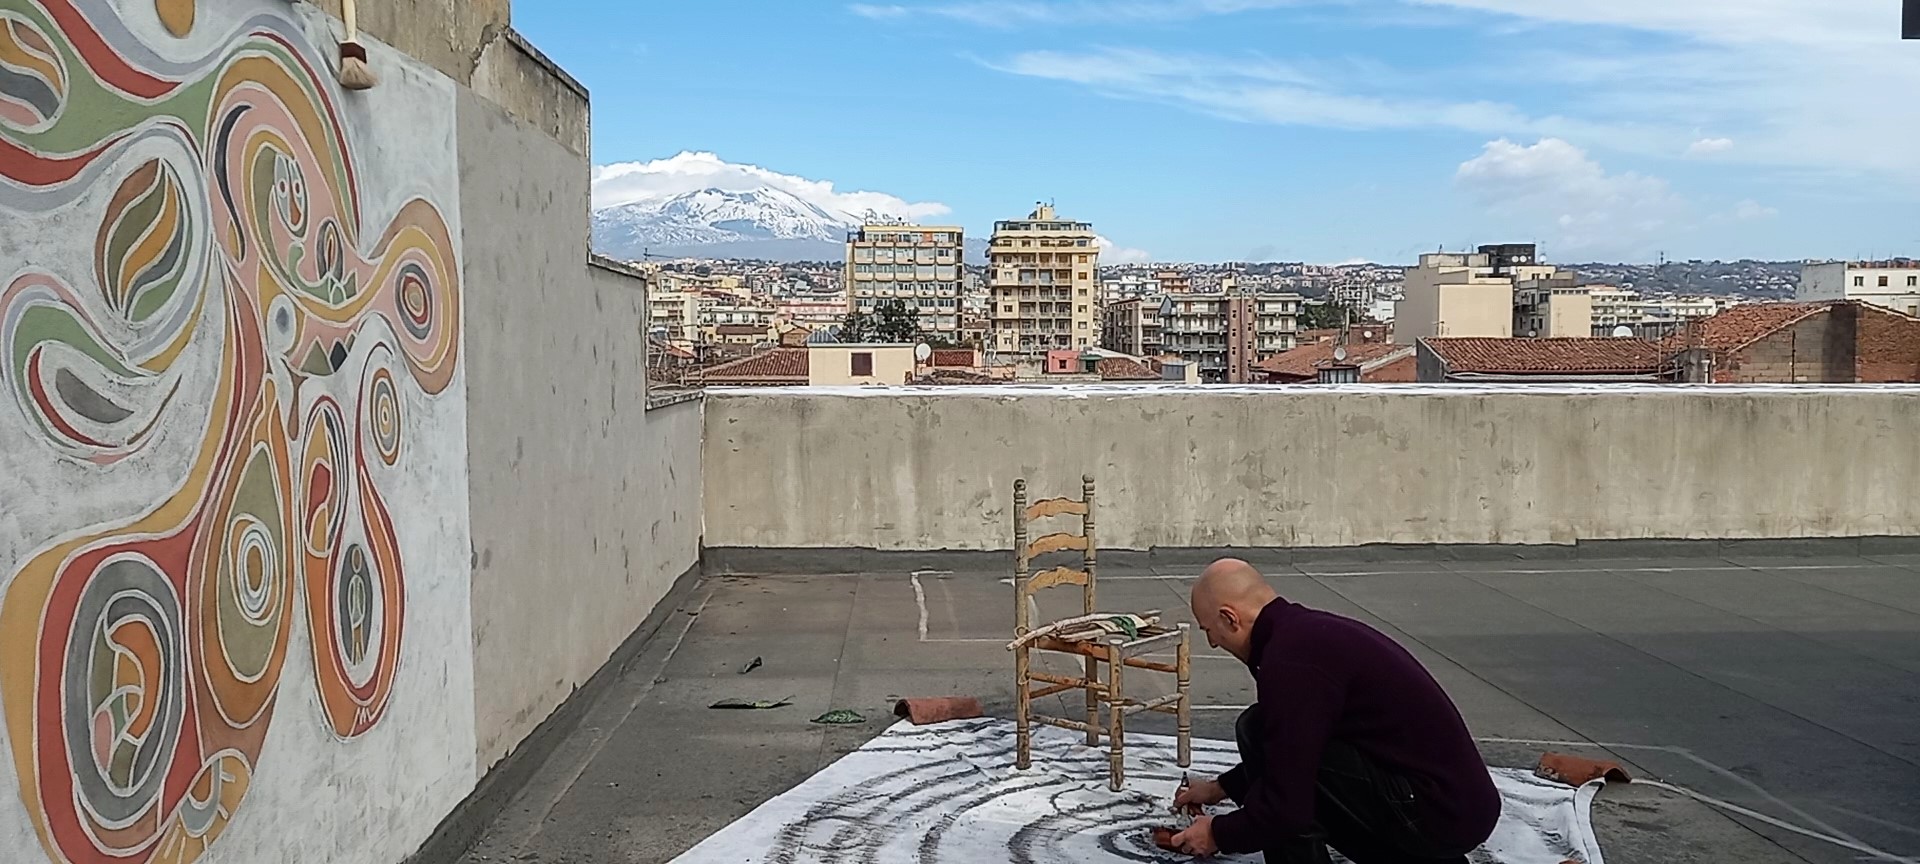 cosmo ricerca indipendente artista sicilia imprints of peace cortile delle nevi claudio arezzo di trifiletti